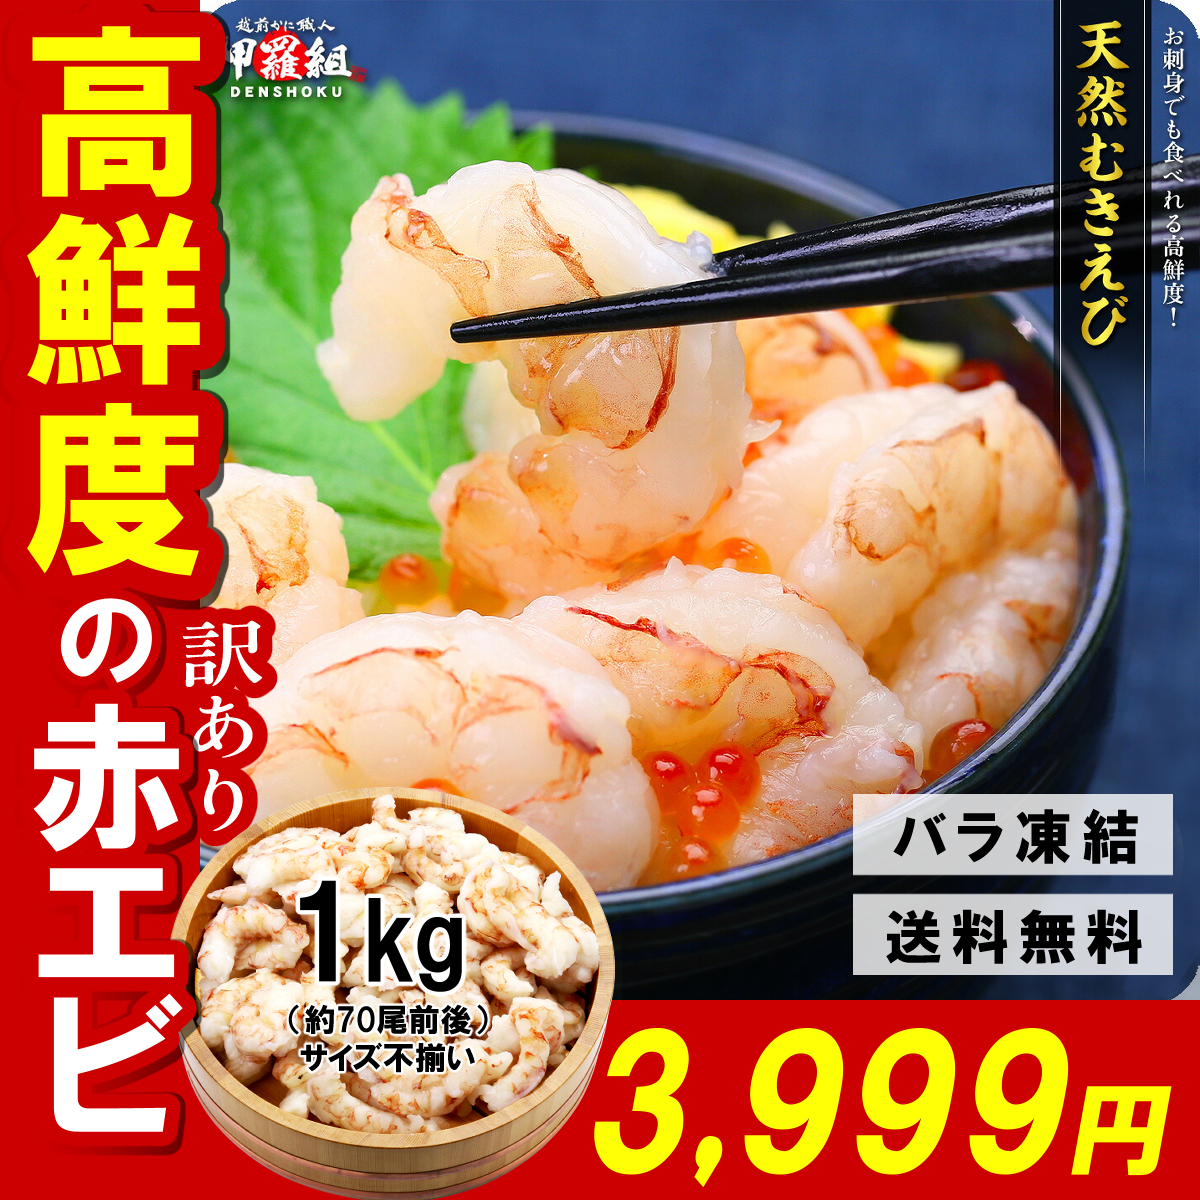 e. креветка море ... креветка красный море .. sashimi тоже еда ... высота свежесть! натуральный [ сырой ].... для бизнеса вдоволь 1kg( примерно 70 хвост * большой маленький роза есть есть. товар с некоторыми замечаниями ) FF